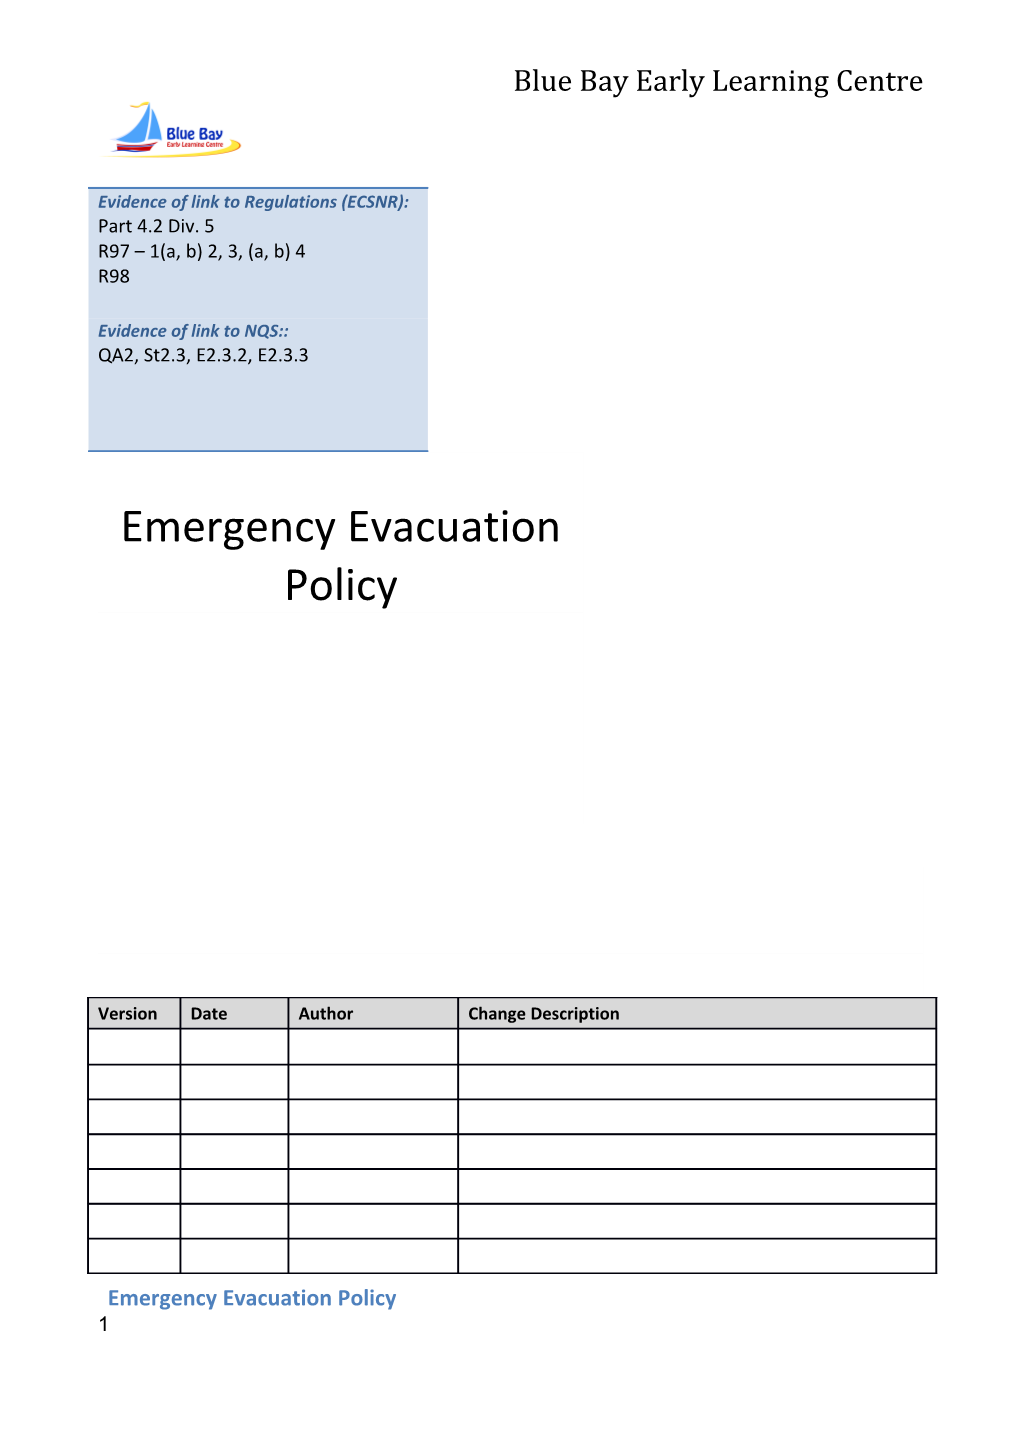 Emergency Evacuation Policy